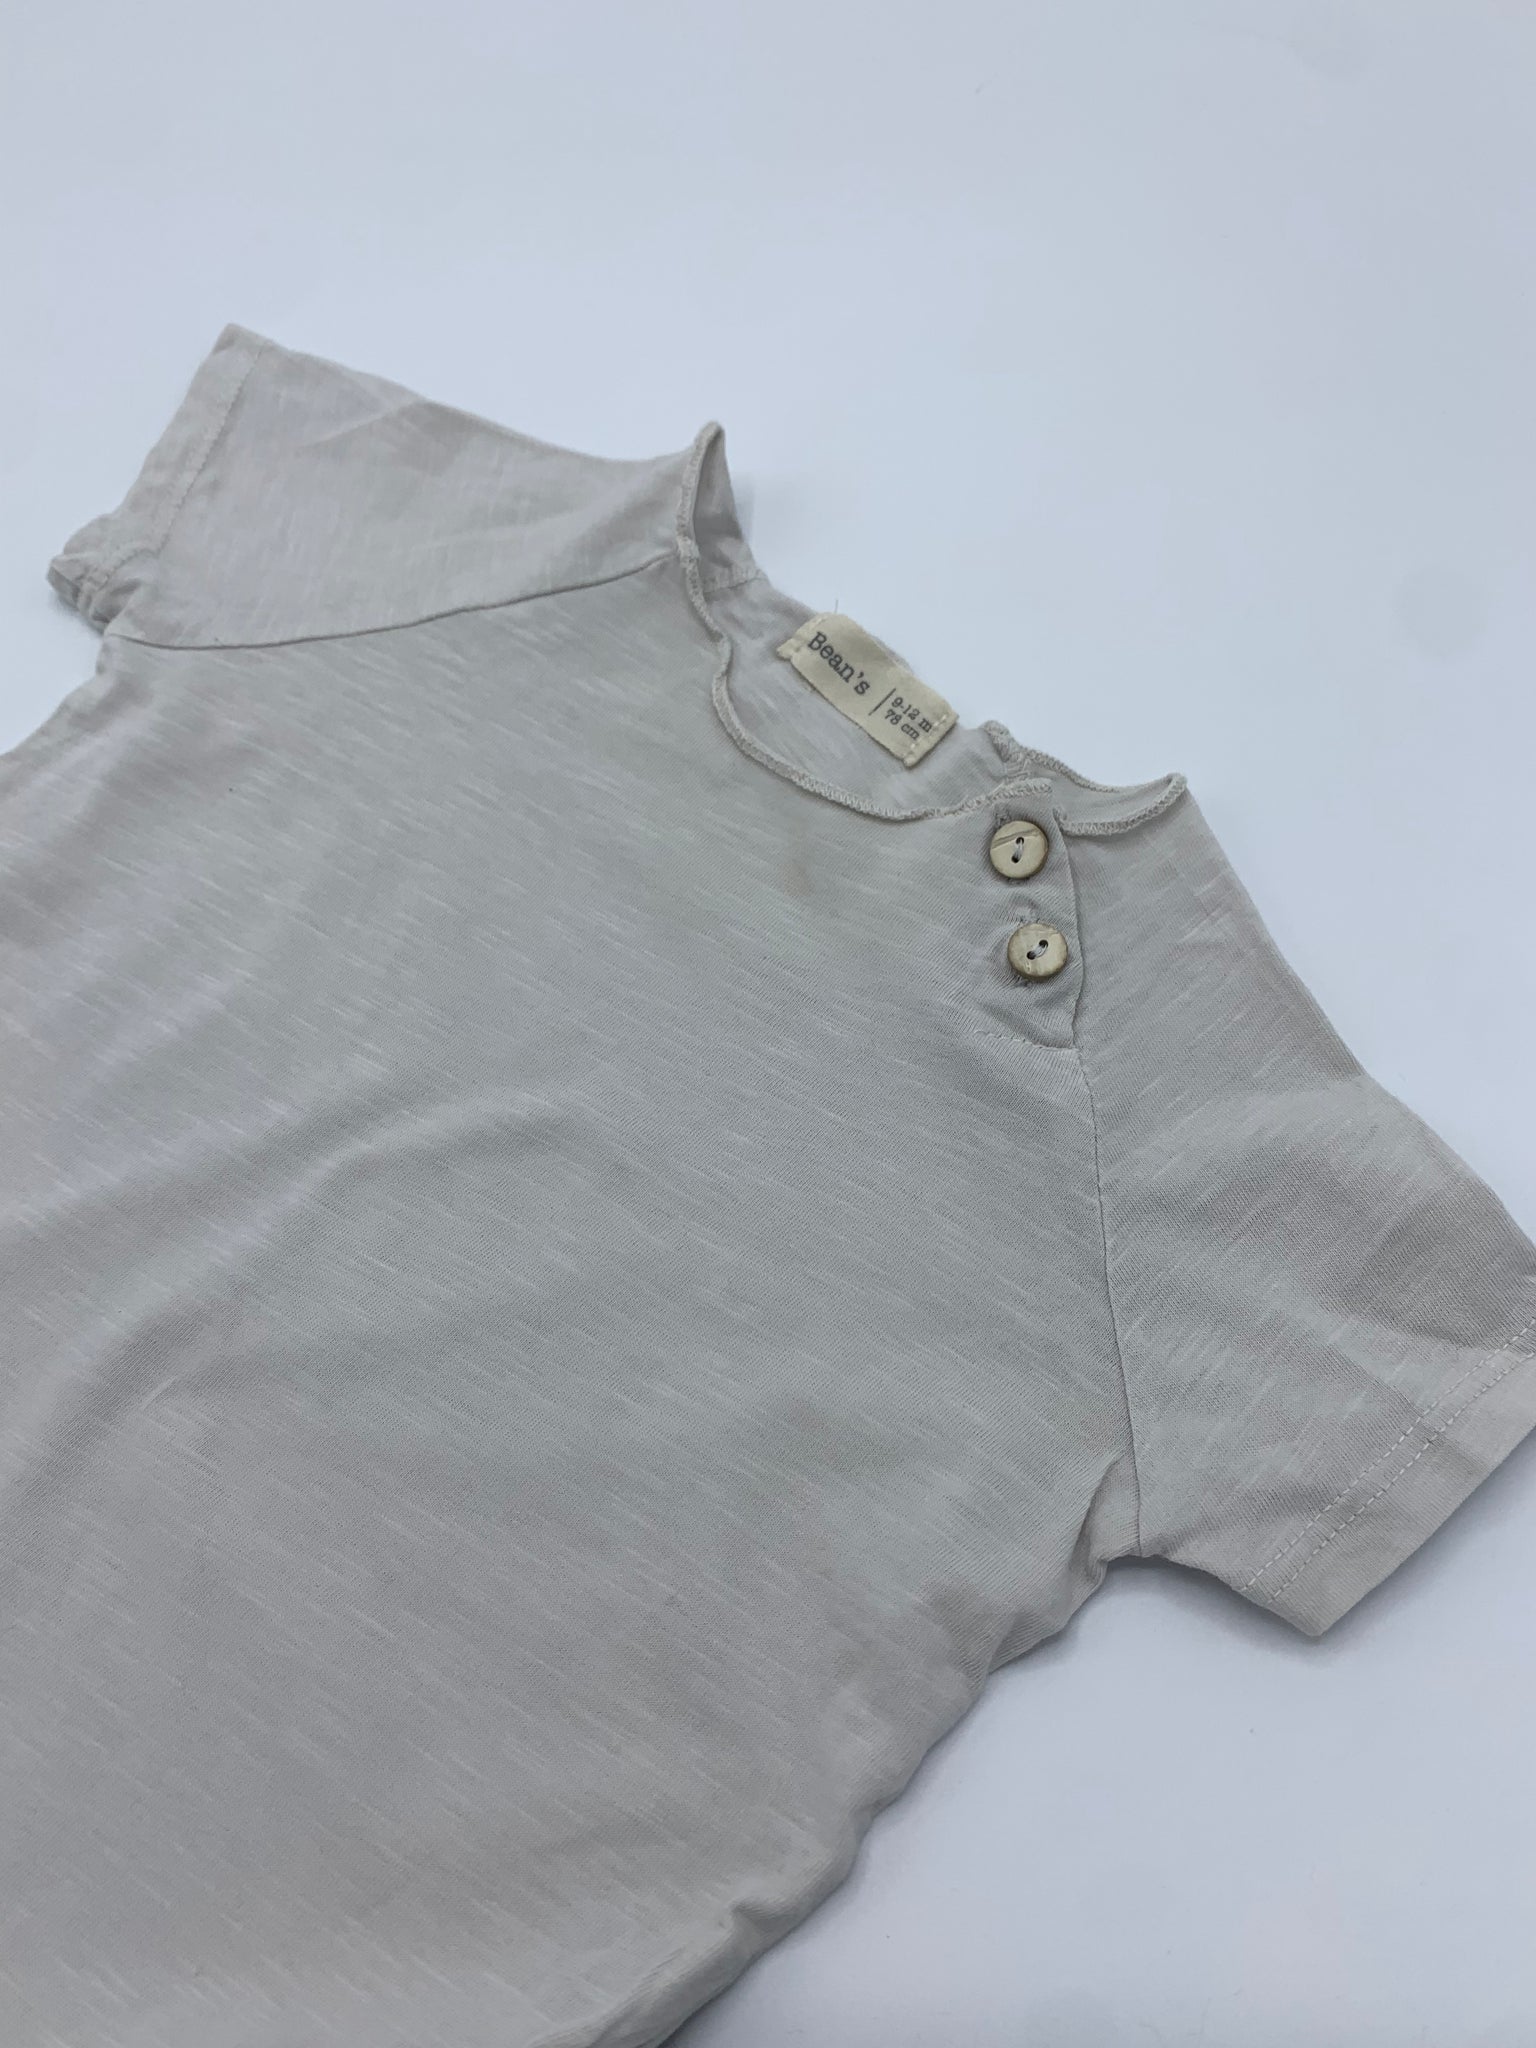 T-shirt Bean’s 9-12 mois 78 cm (petit défaut)